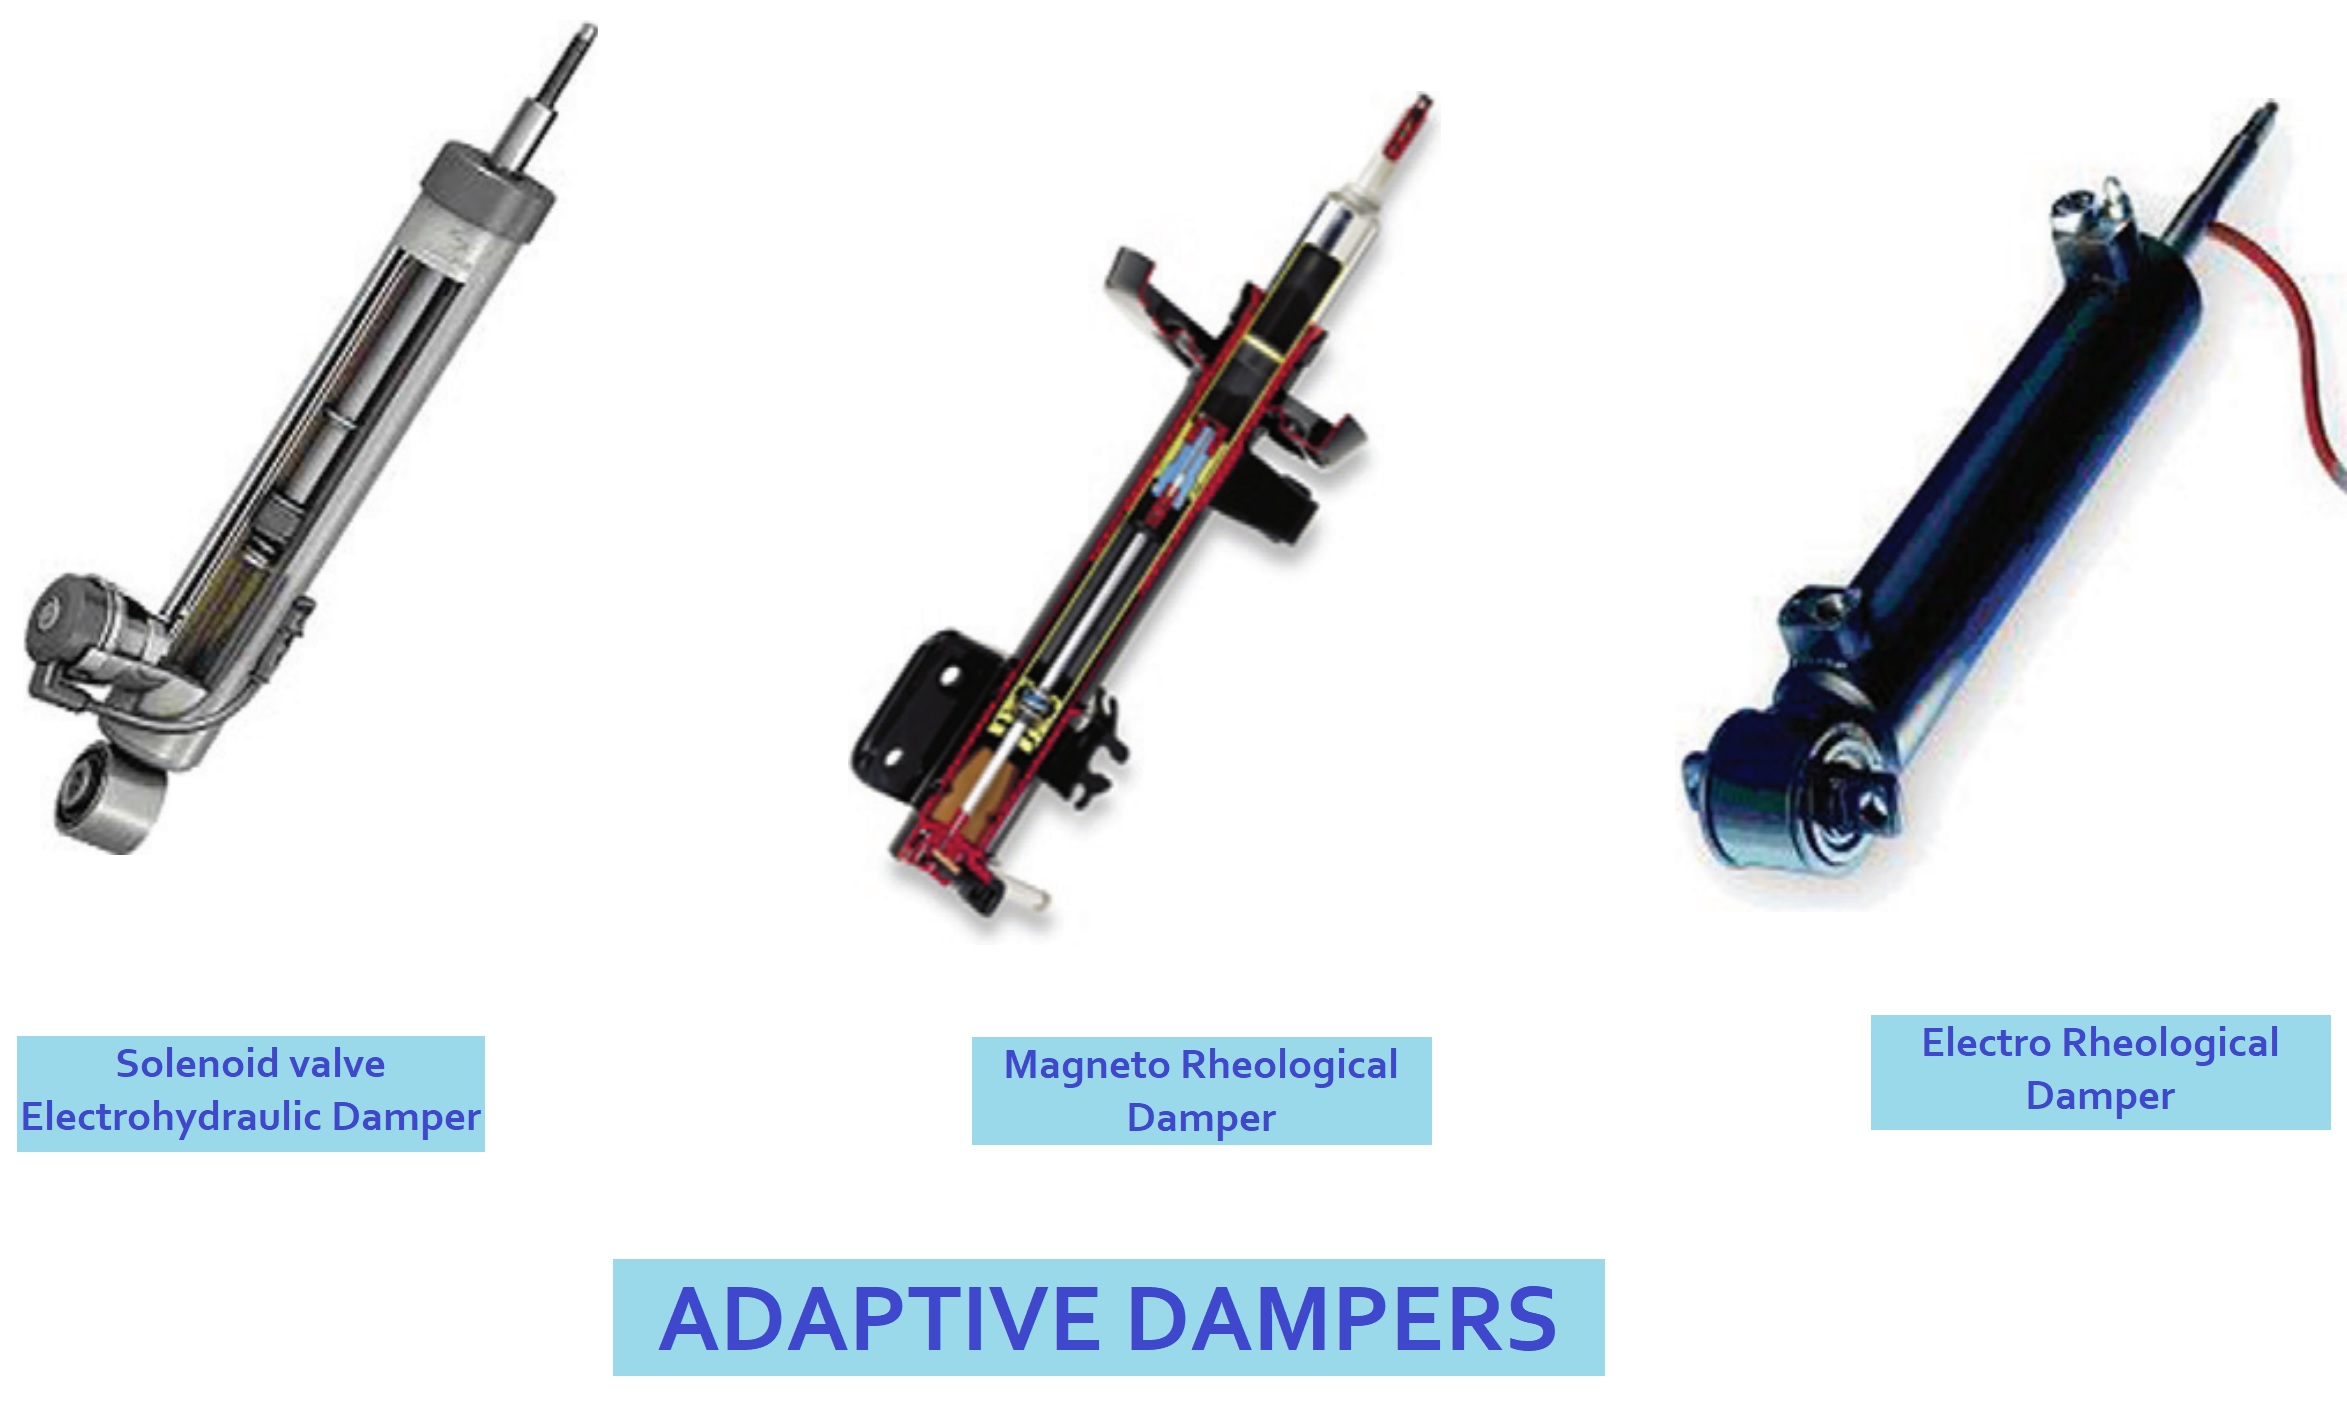 01-adaptive-dampers-solenoid-valve-electrohydraulic-dampers-magnetorheological-damper